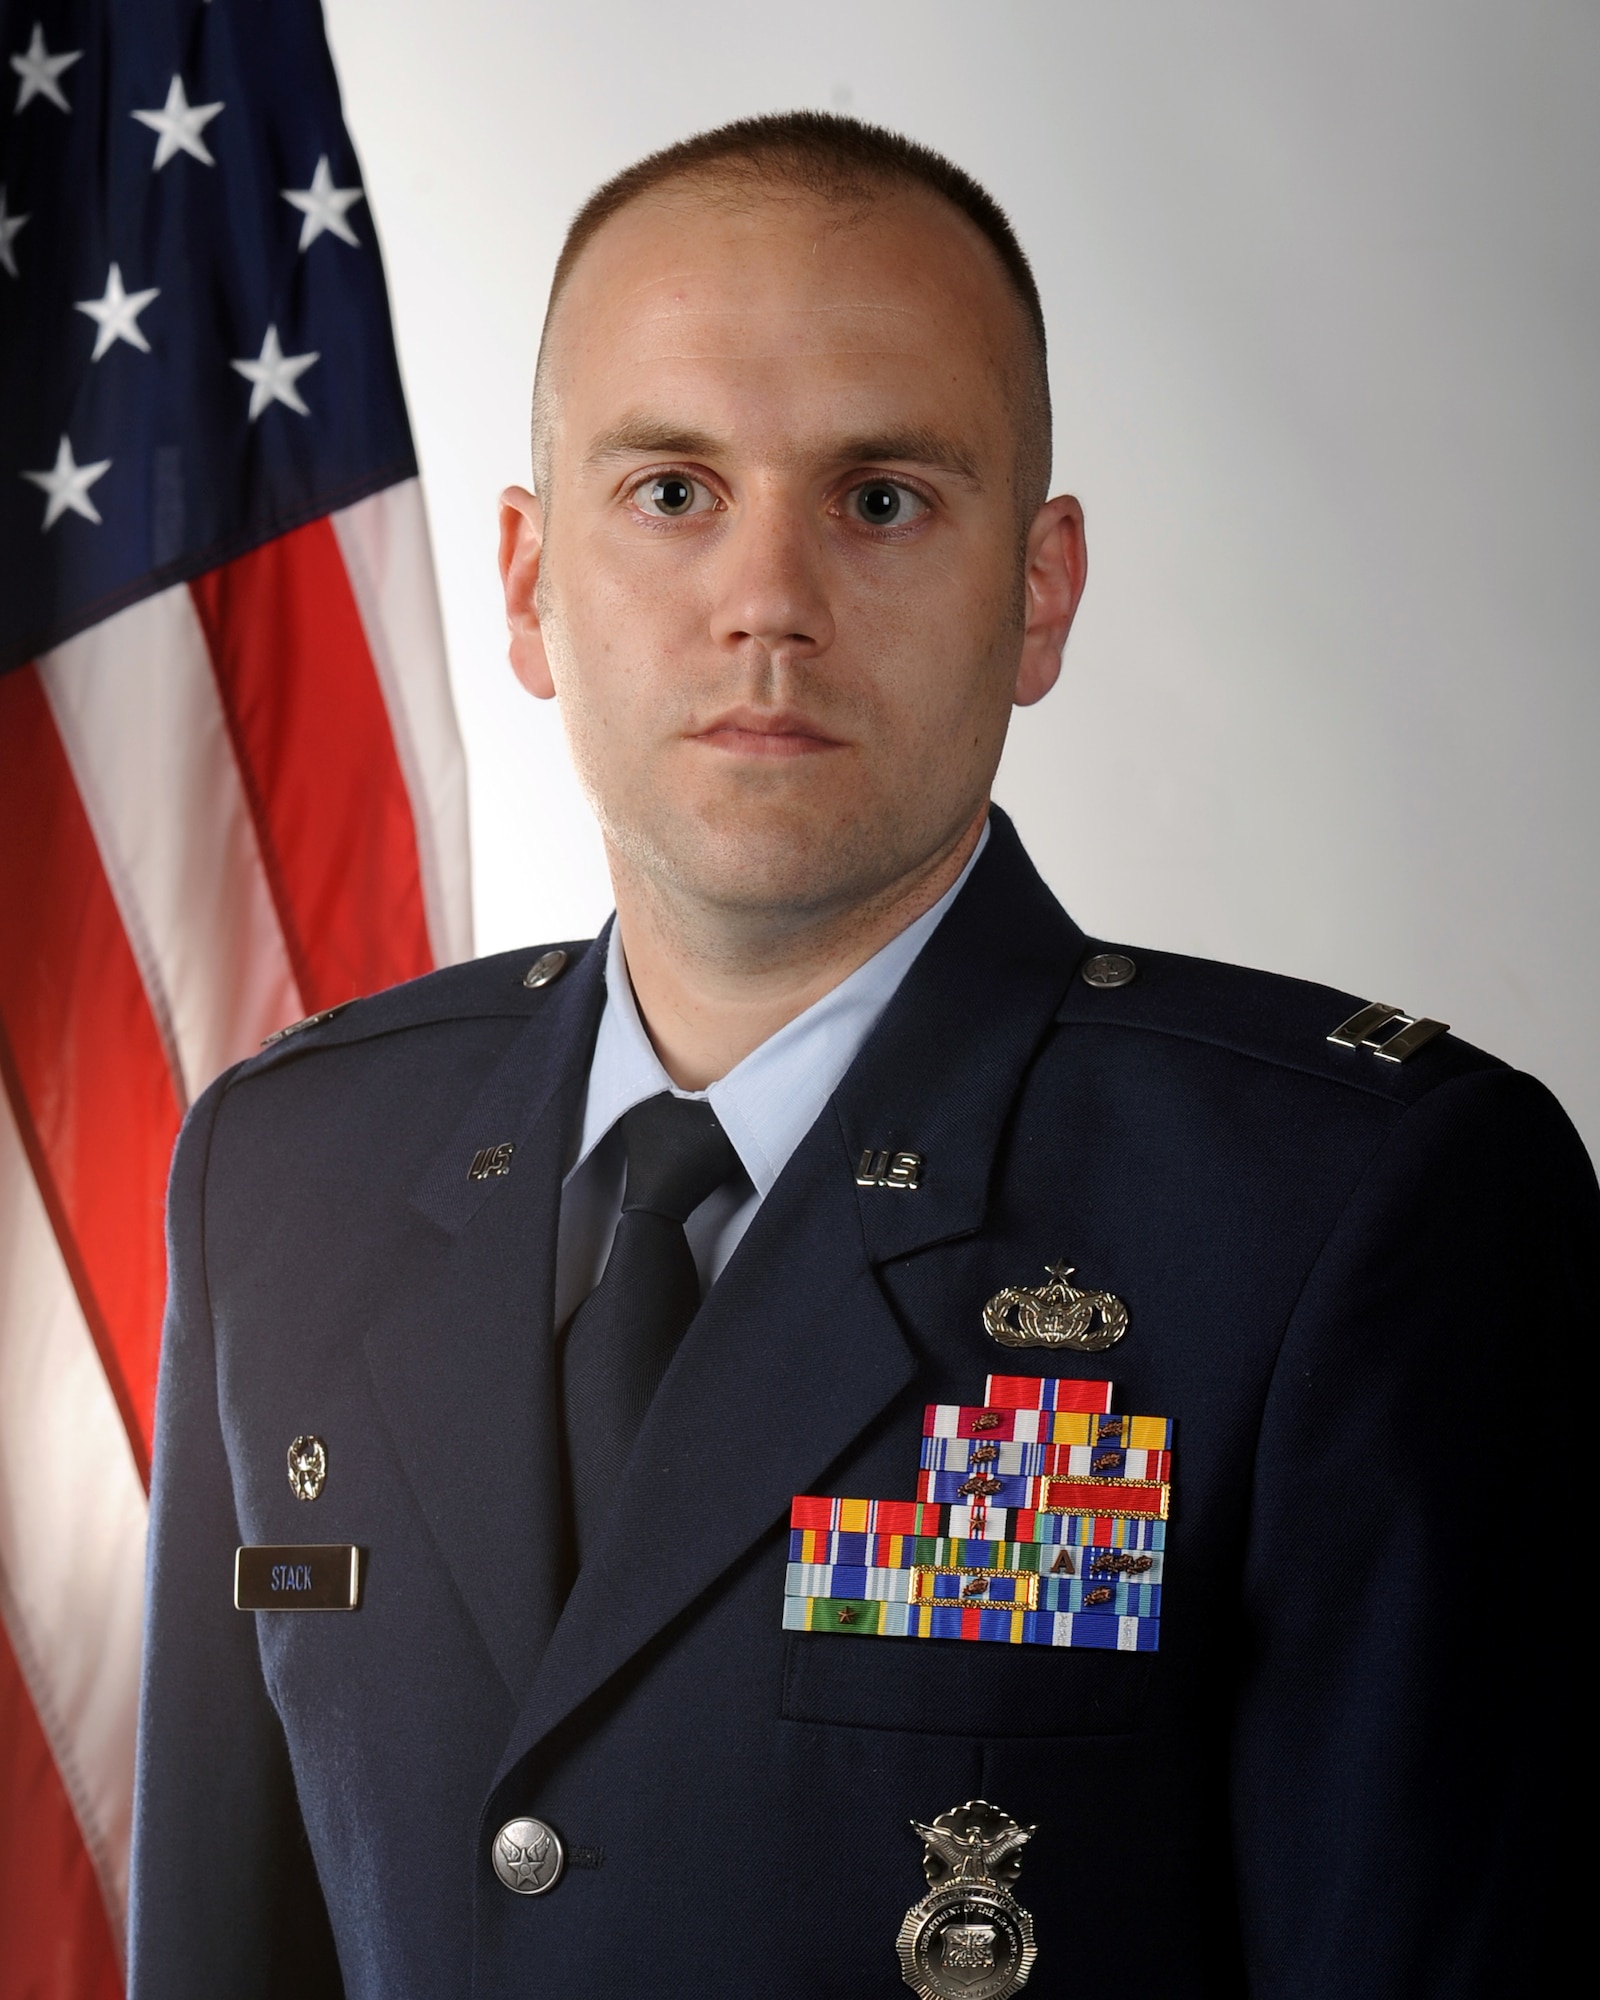 Capt. Jason E. Stack, 460th Security Forces Squadron commander